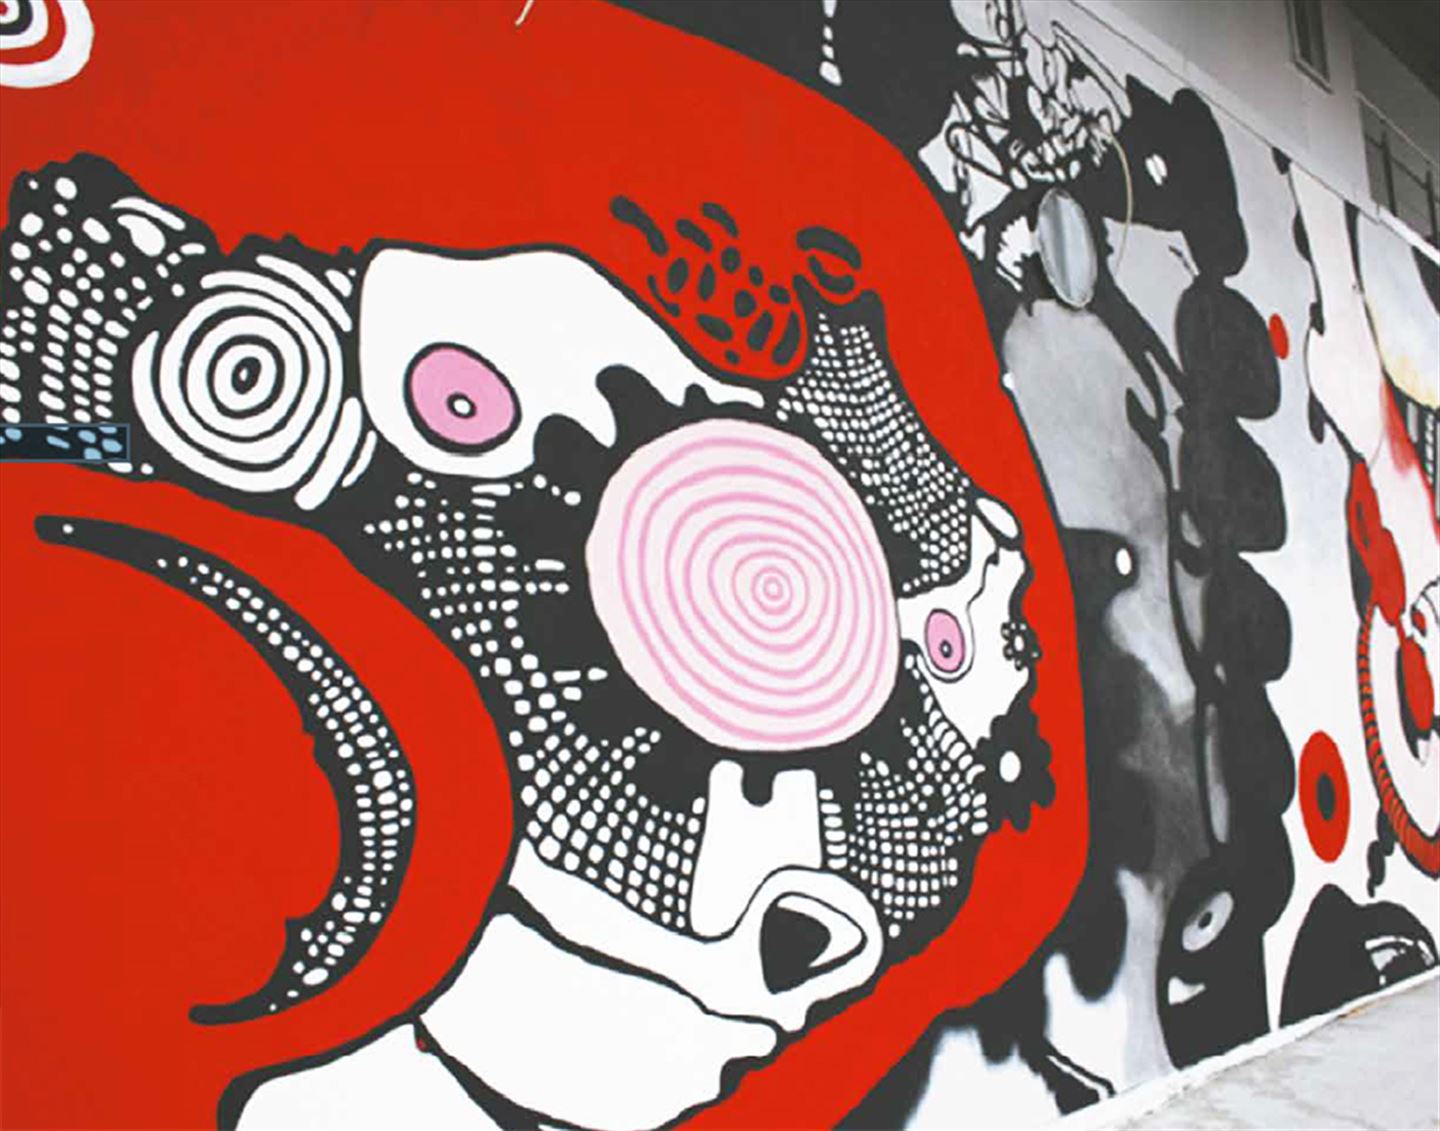 foto av kunstverket Adebaran langs bybanetraseen. Det er eit stort teikneserieaktig kunstverkverk i svart, raudt og rosa.